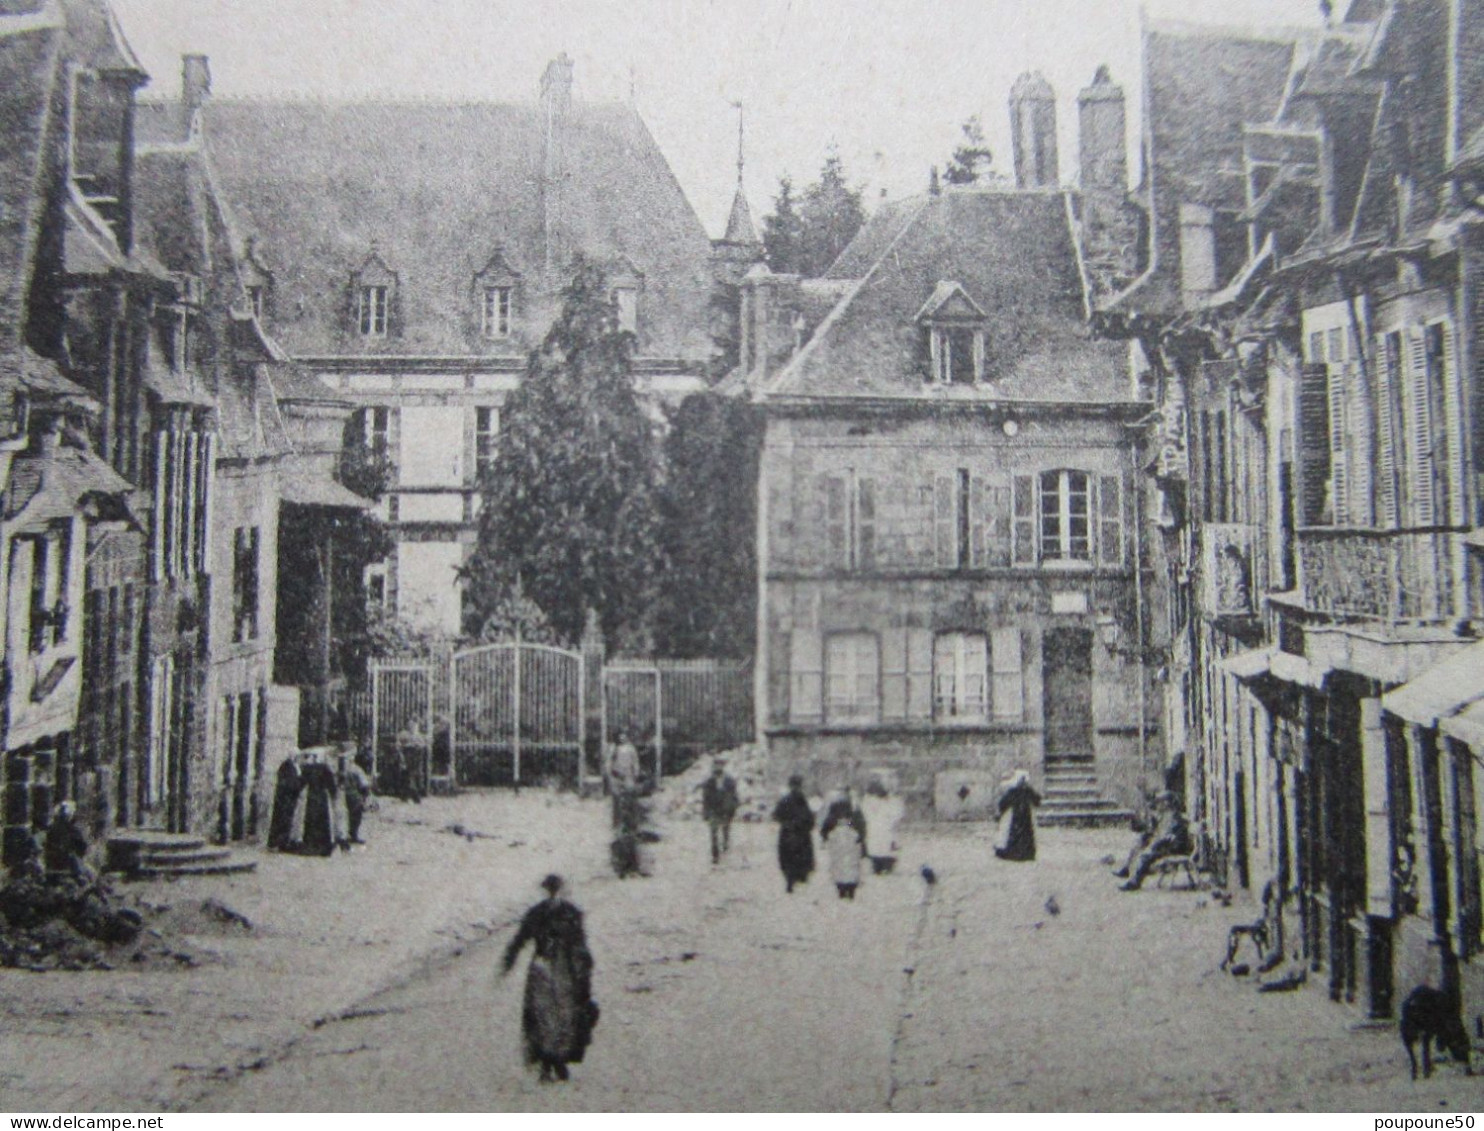 CP 56 Morbihan GUEMENE Sur SCOFF Place Bisson, écrite Et Timbrée 1906 - Guemene Sur Scorff